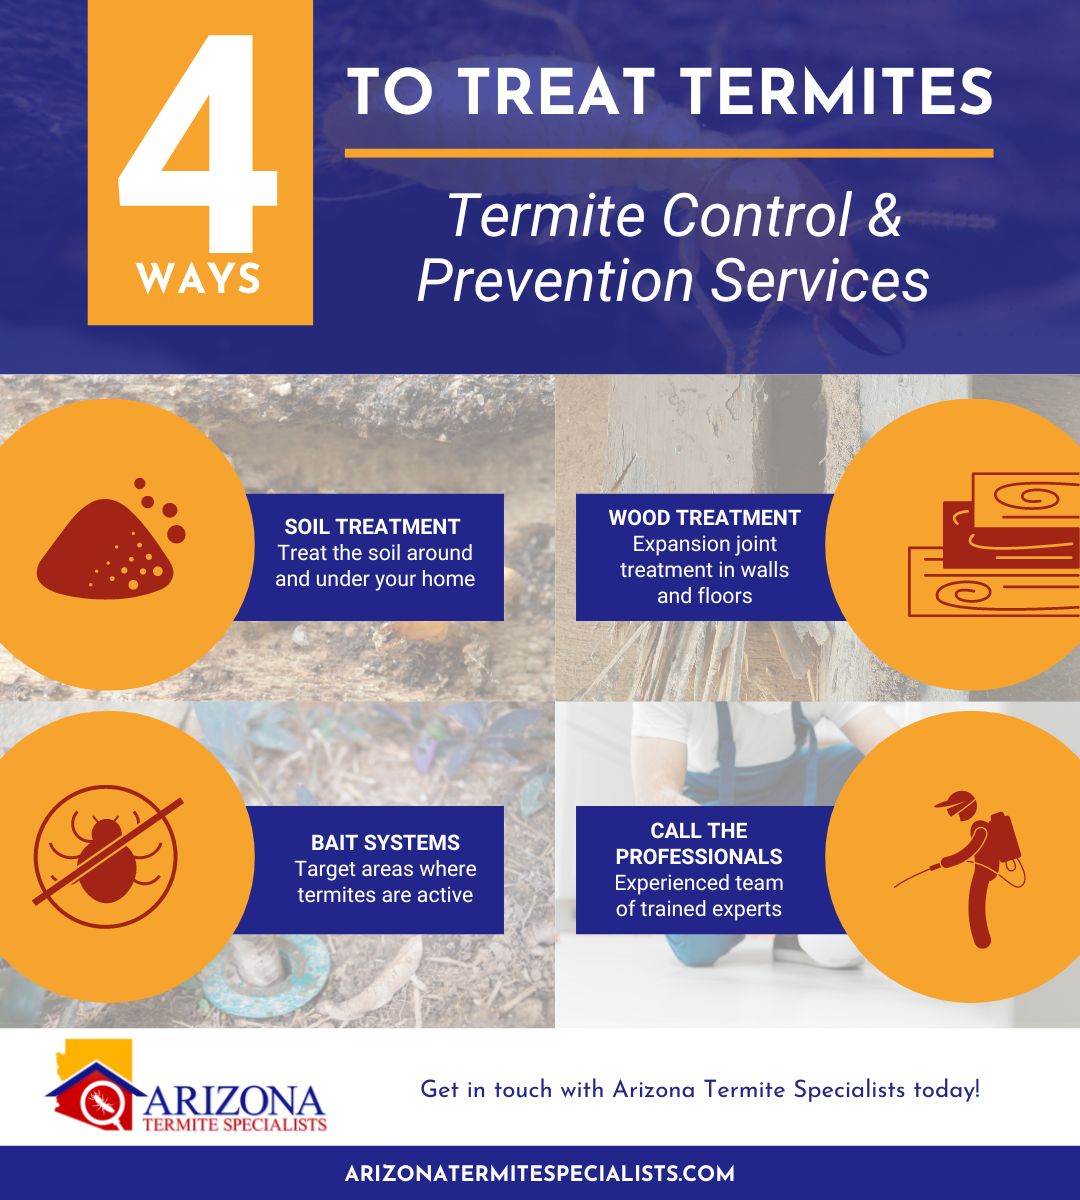 4 ways to treat termites infographic